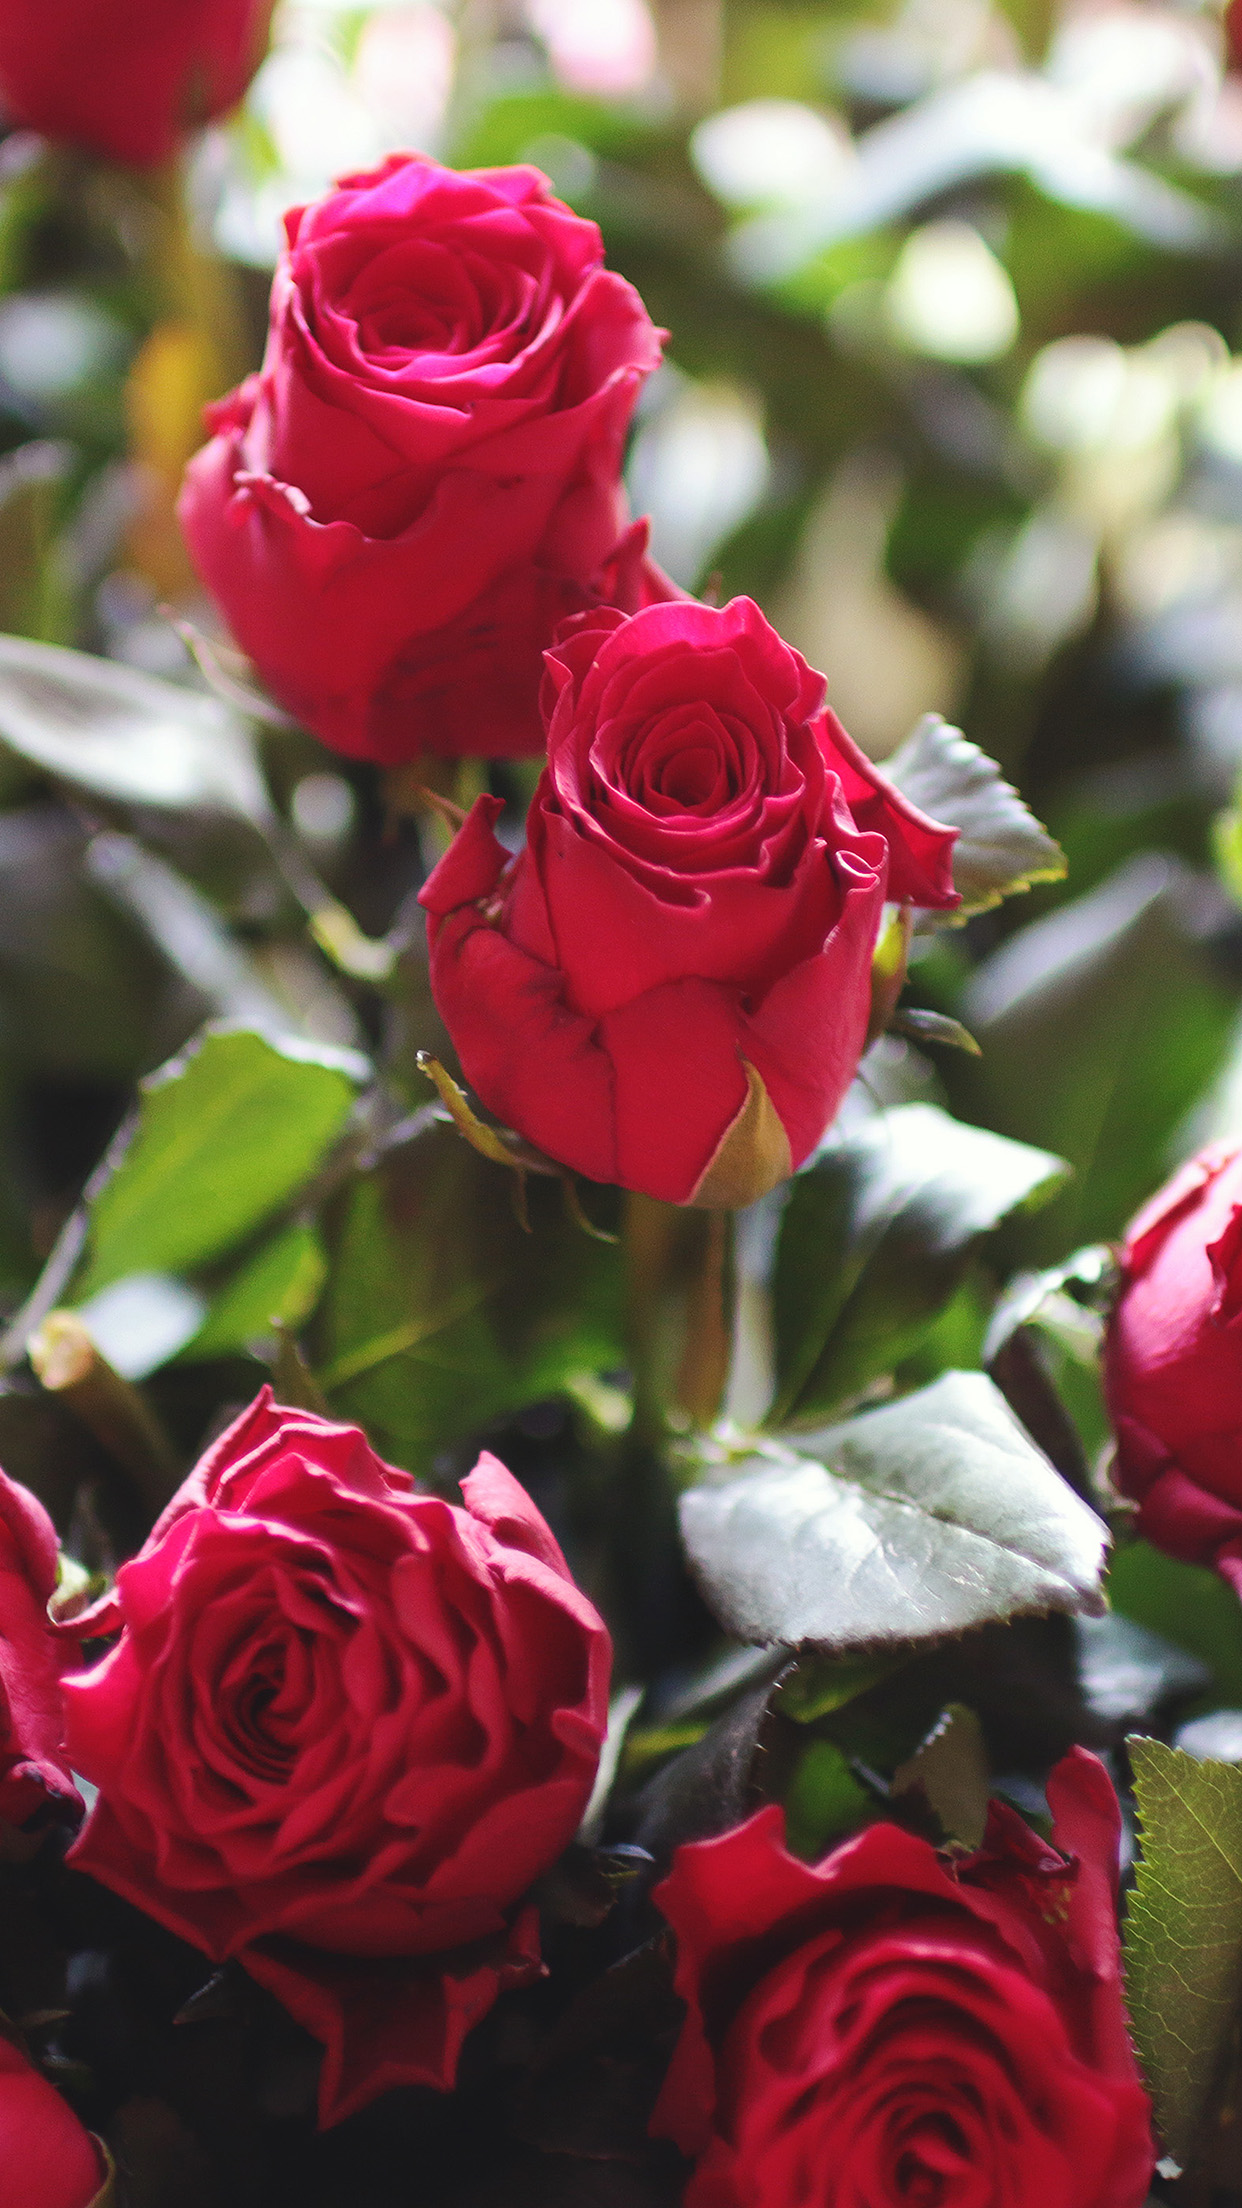 red rose wallpaper,flower,garden roses,flowering plant,julia child rose,rose